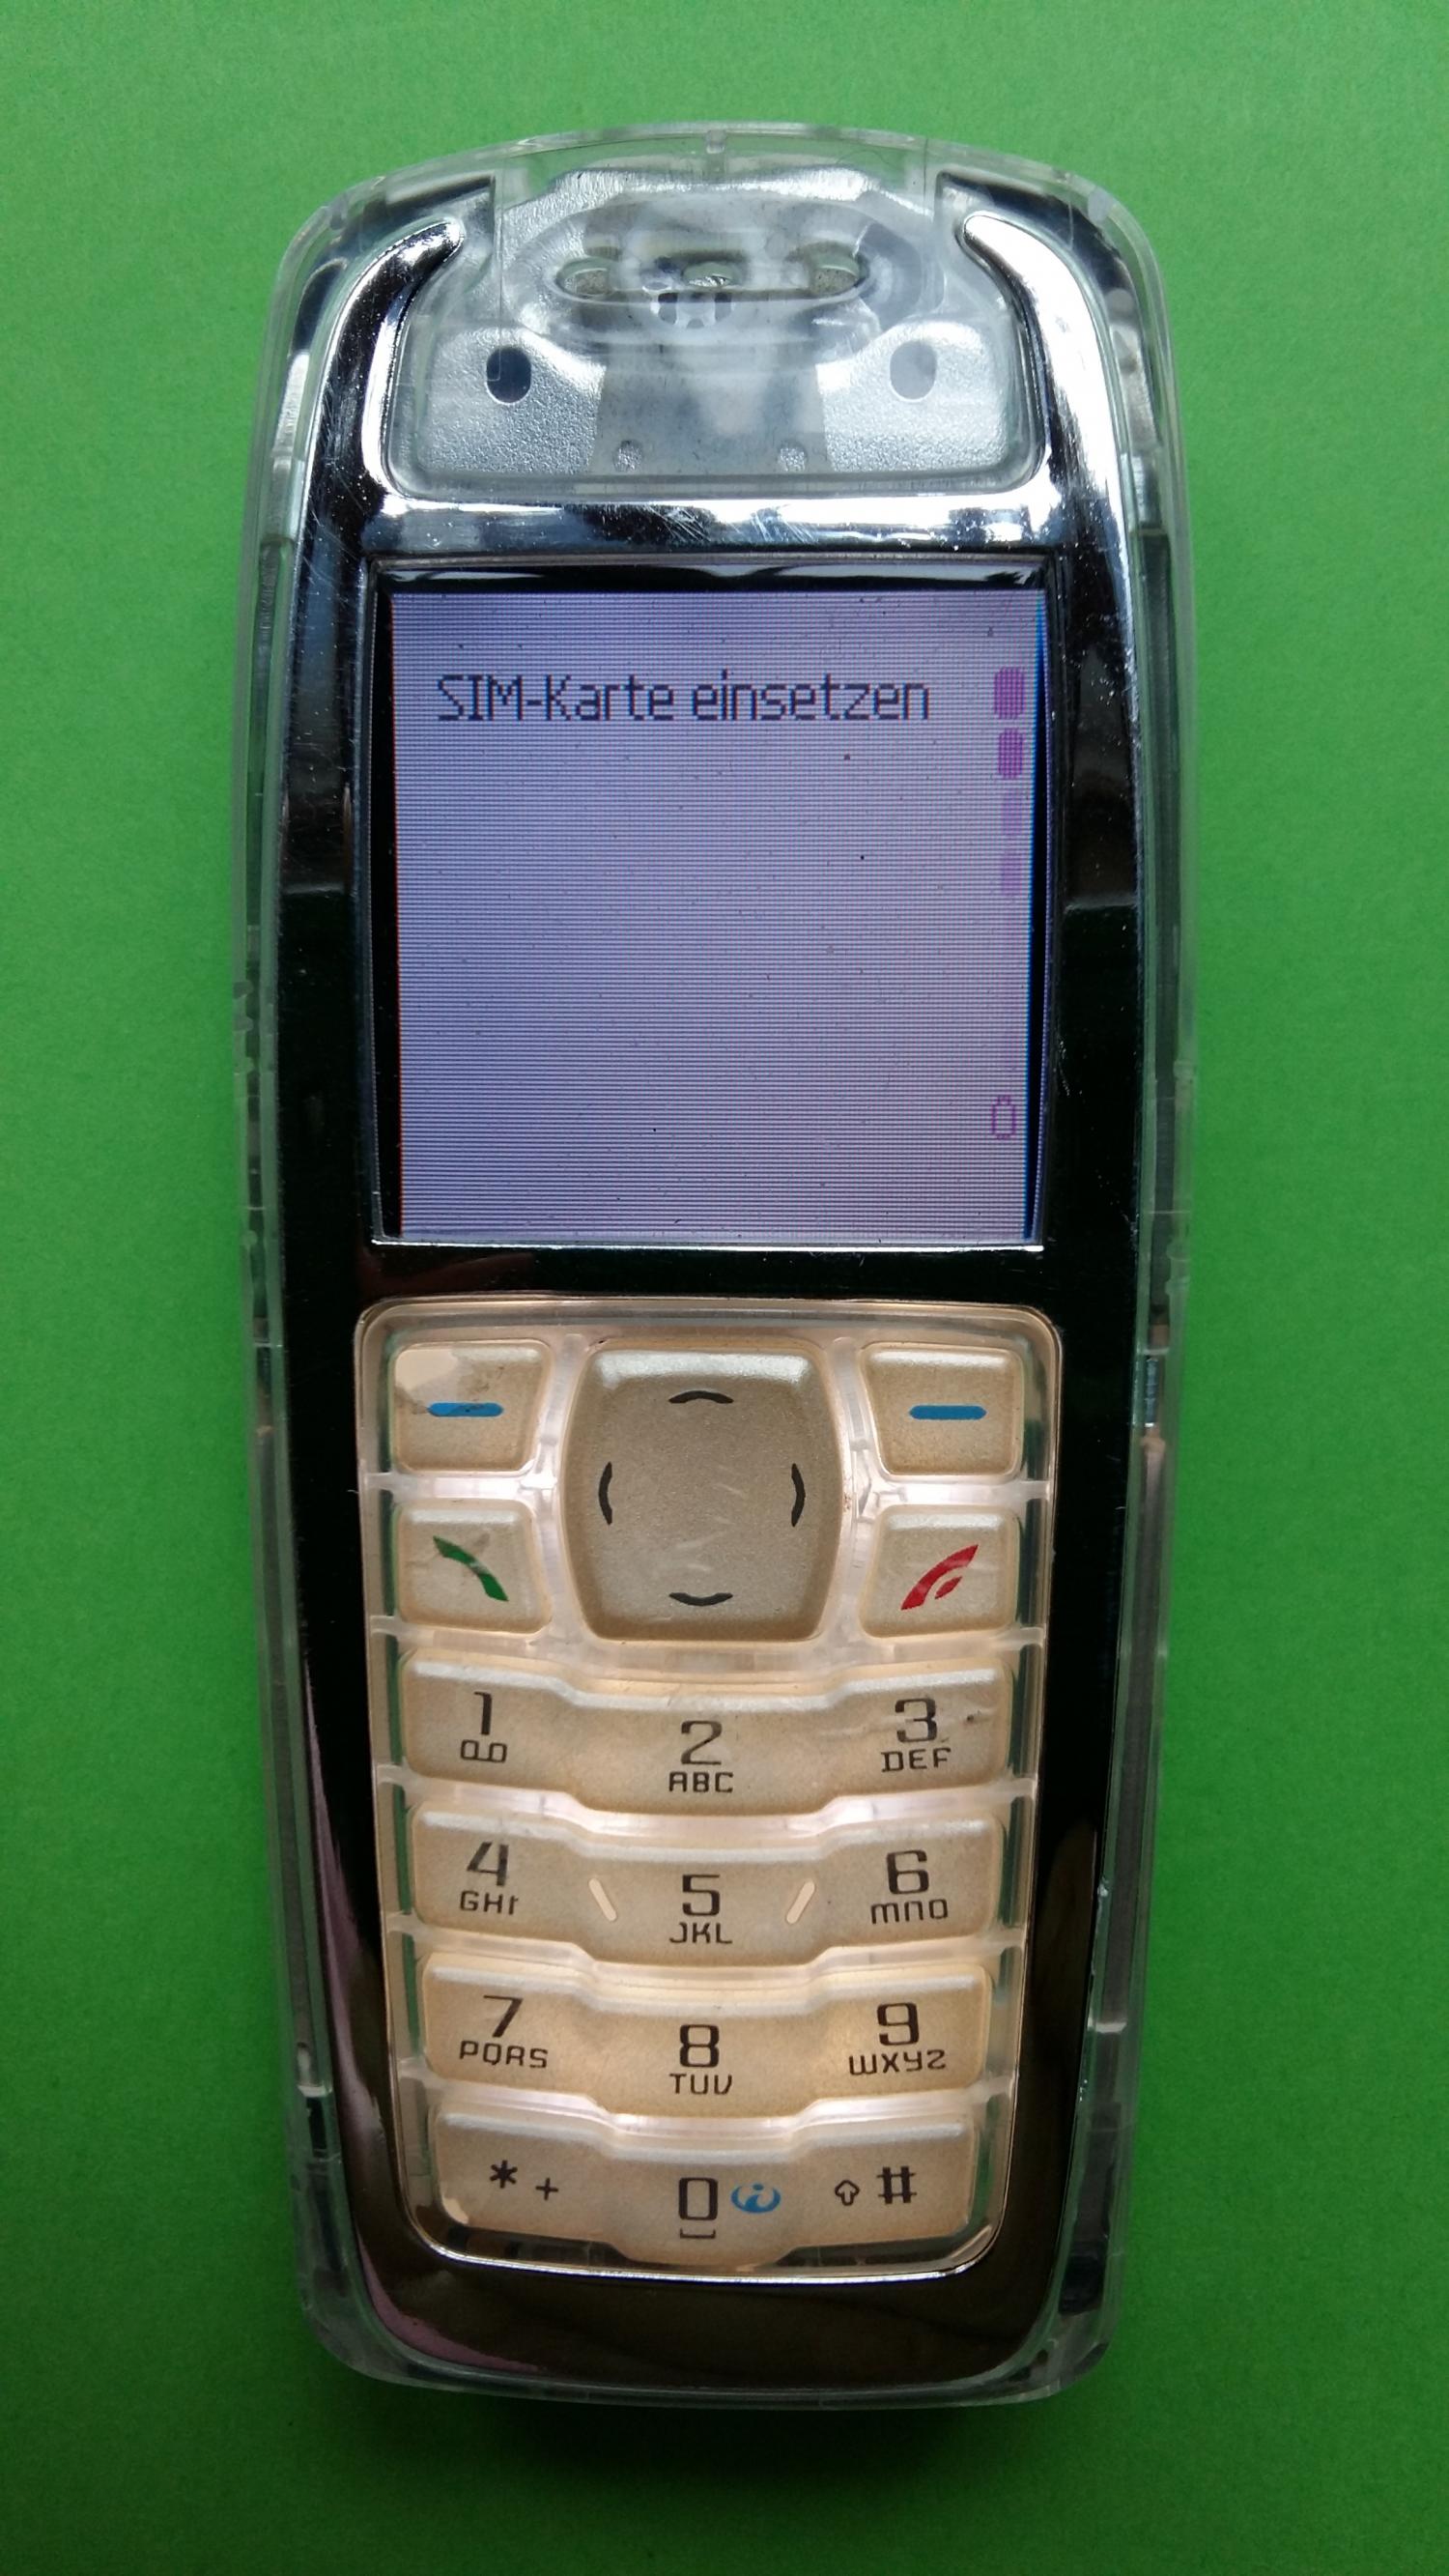 image-7321123-Nokia 3100 (1)1.jpg